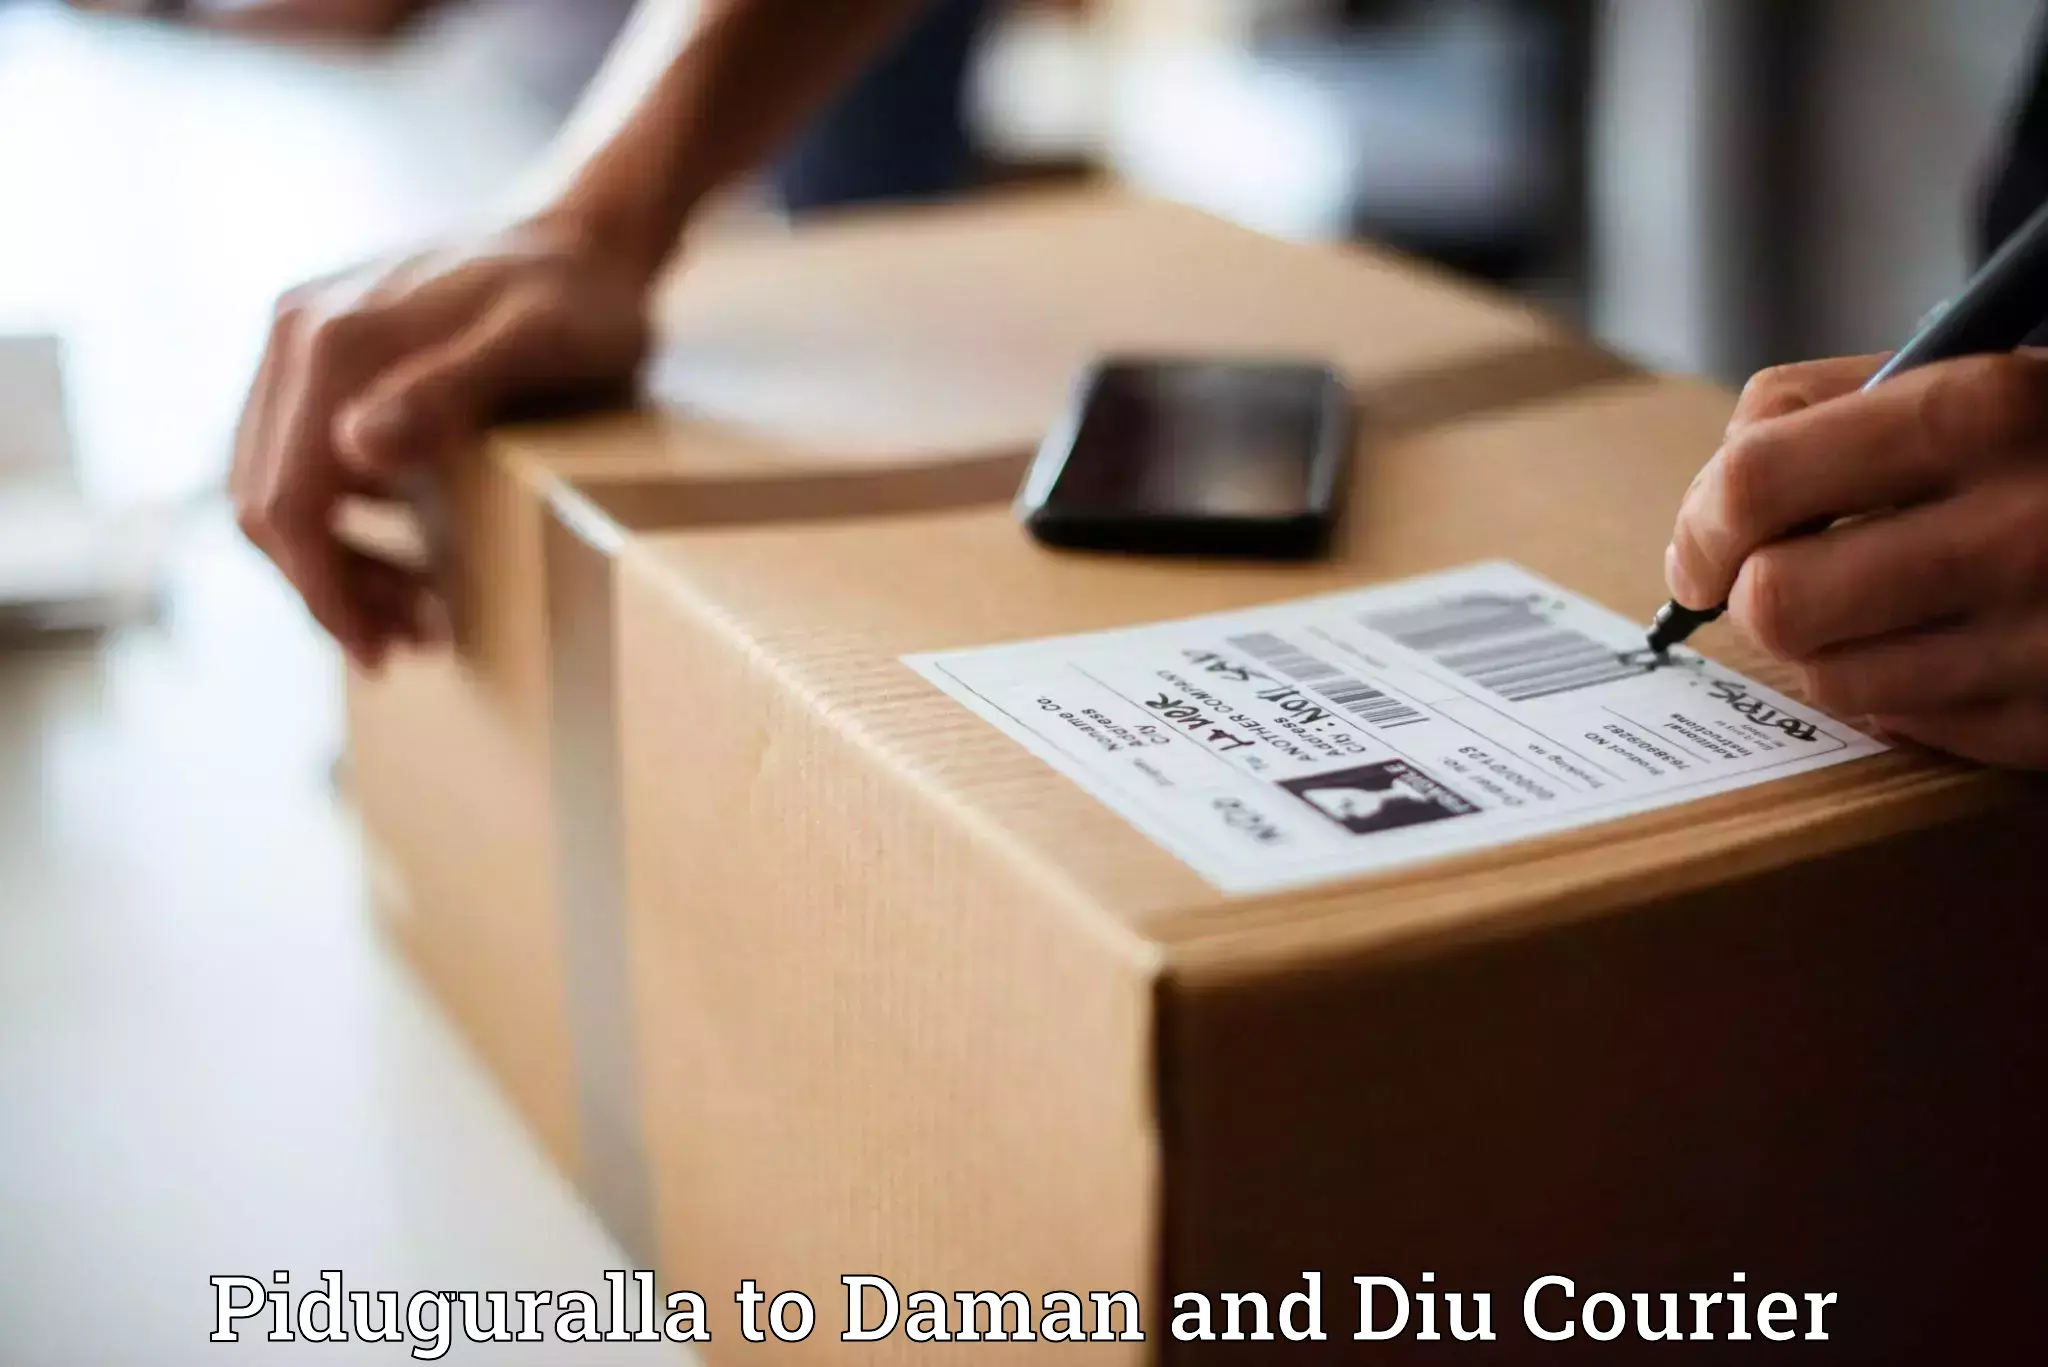 Digital courier platforms Piduguralla to Daman and Diu